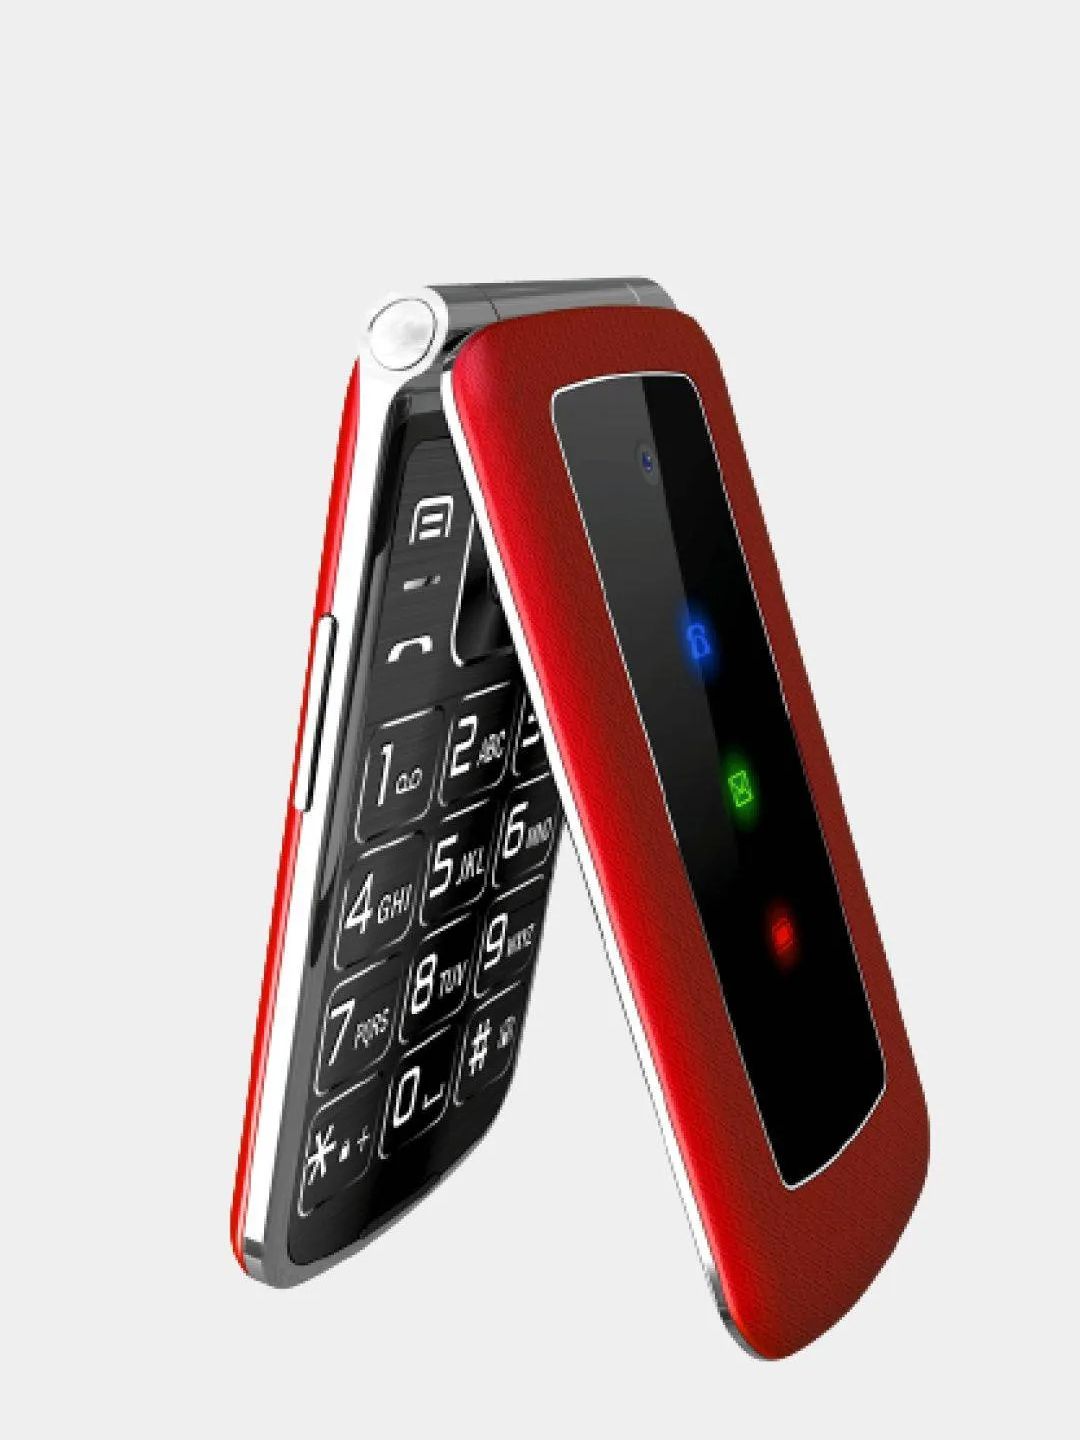 Телефон раскладушка красный. Мобильный телефон Olmio f28 (черный). Телефон Olmio f28 (Red). Сотовый телефон Olmio f28 Red. Мобильный телефон Olmio f28 красный.